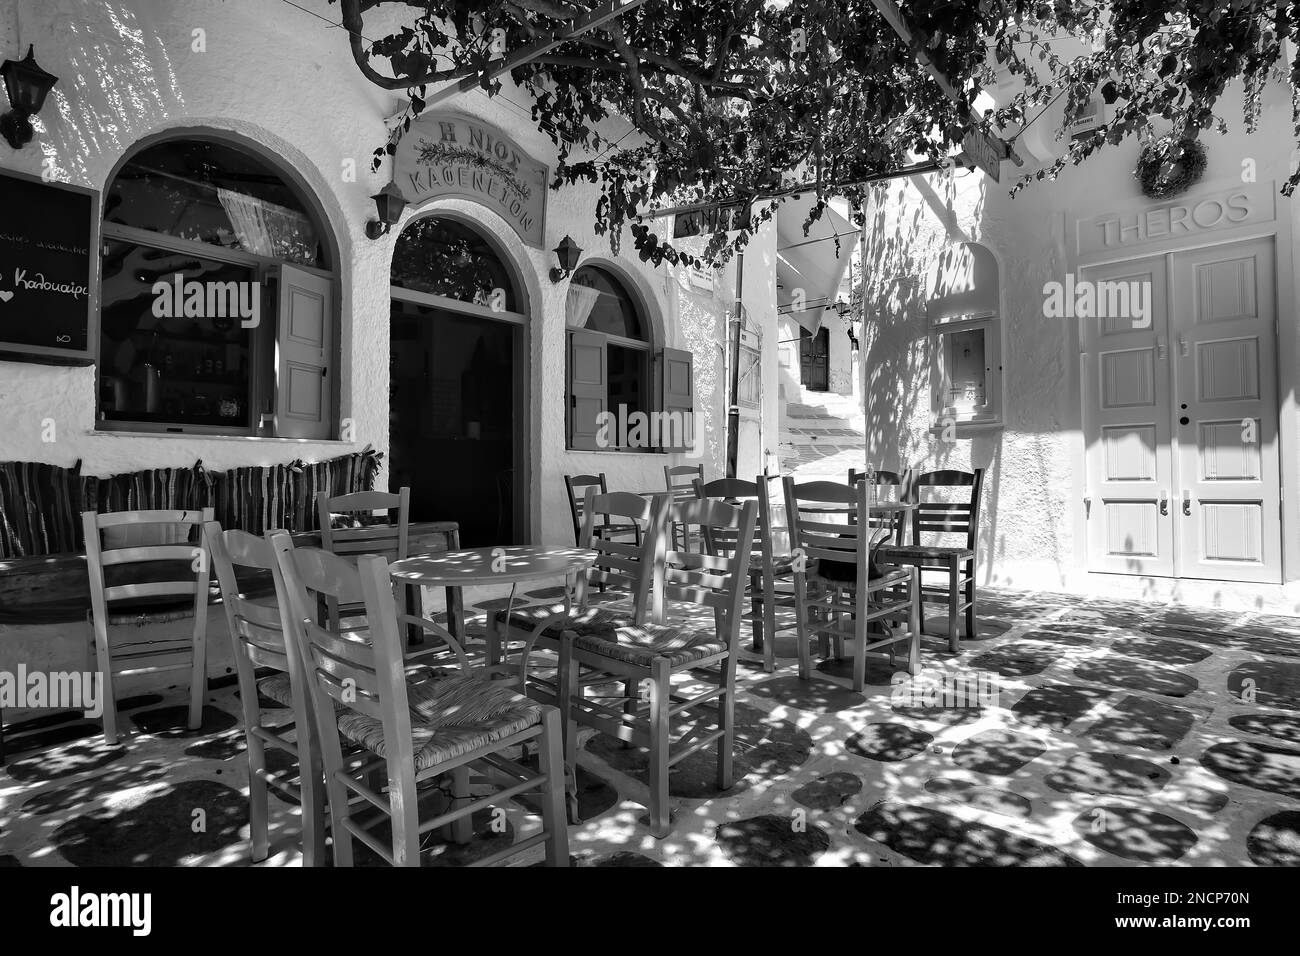 IOS, Grèce - 2 juin 2021 : vue sur un bar restaurant avec une terrasse pittoresque en plein air et chaises colorées dans les cyclades d'iOS Grèce en noir et blanc Banque D'Images